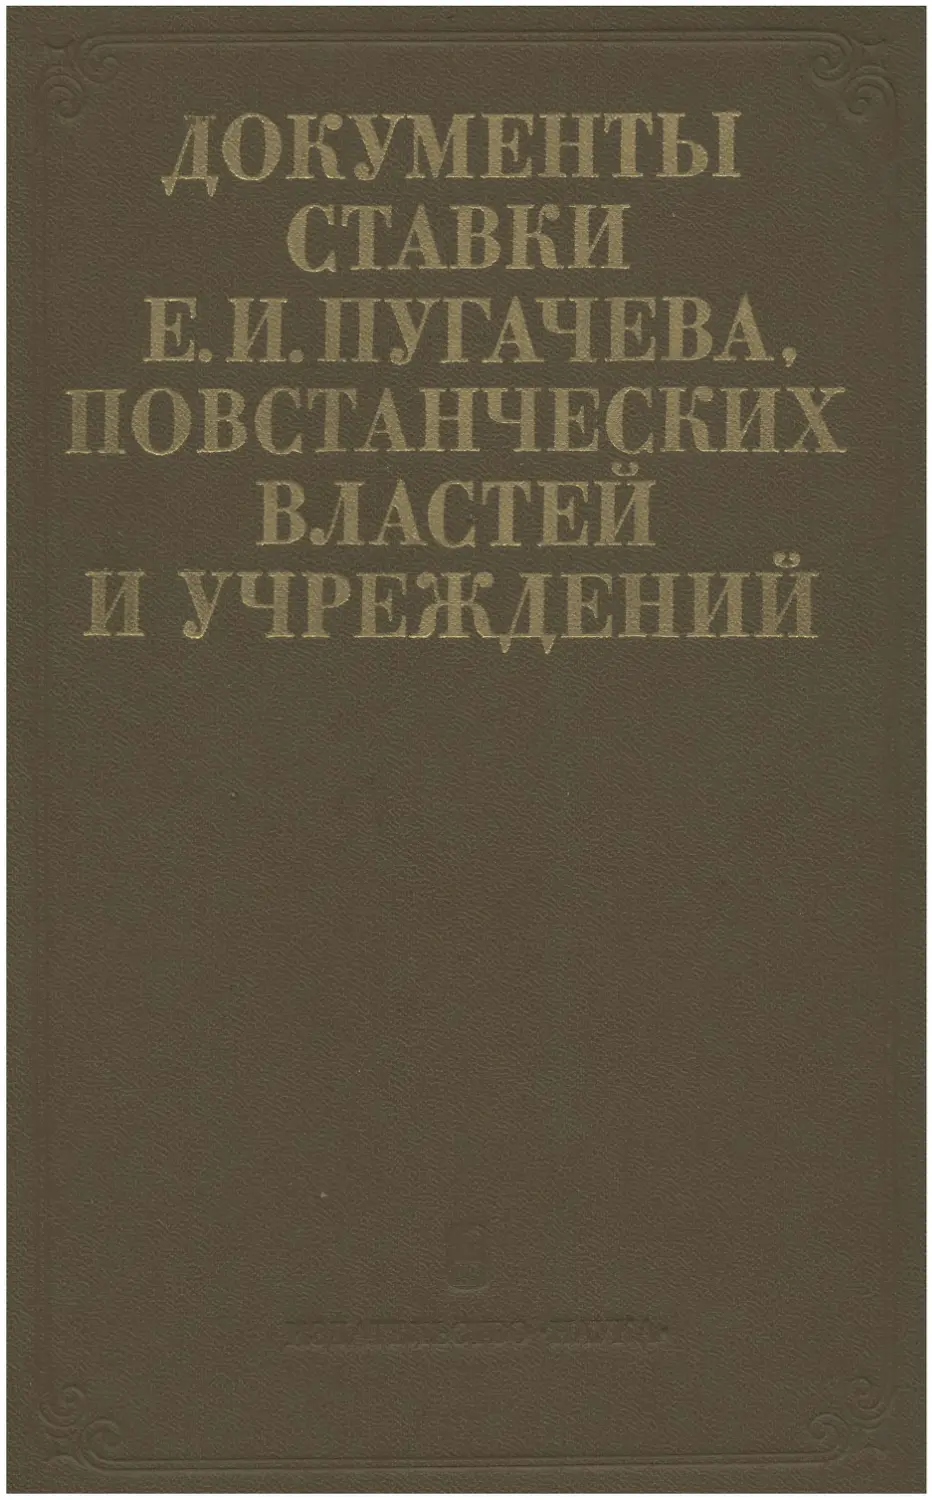 Документы Ставки Е.И. Пугачева, повстанческих властей и учреждений